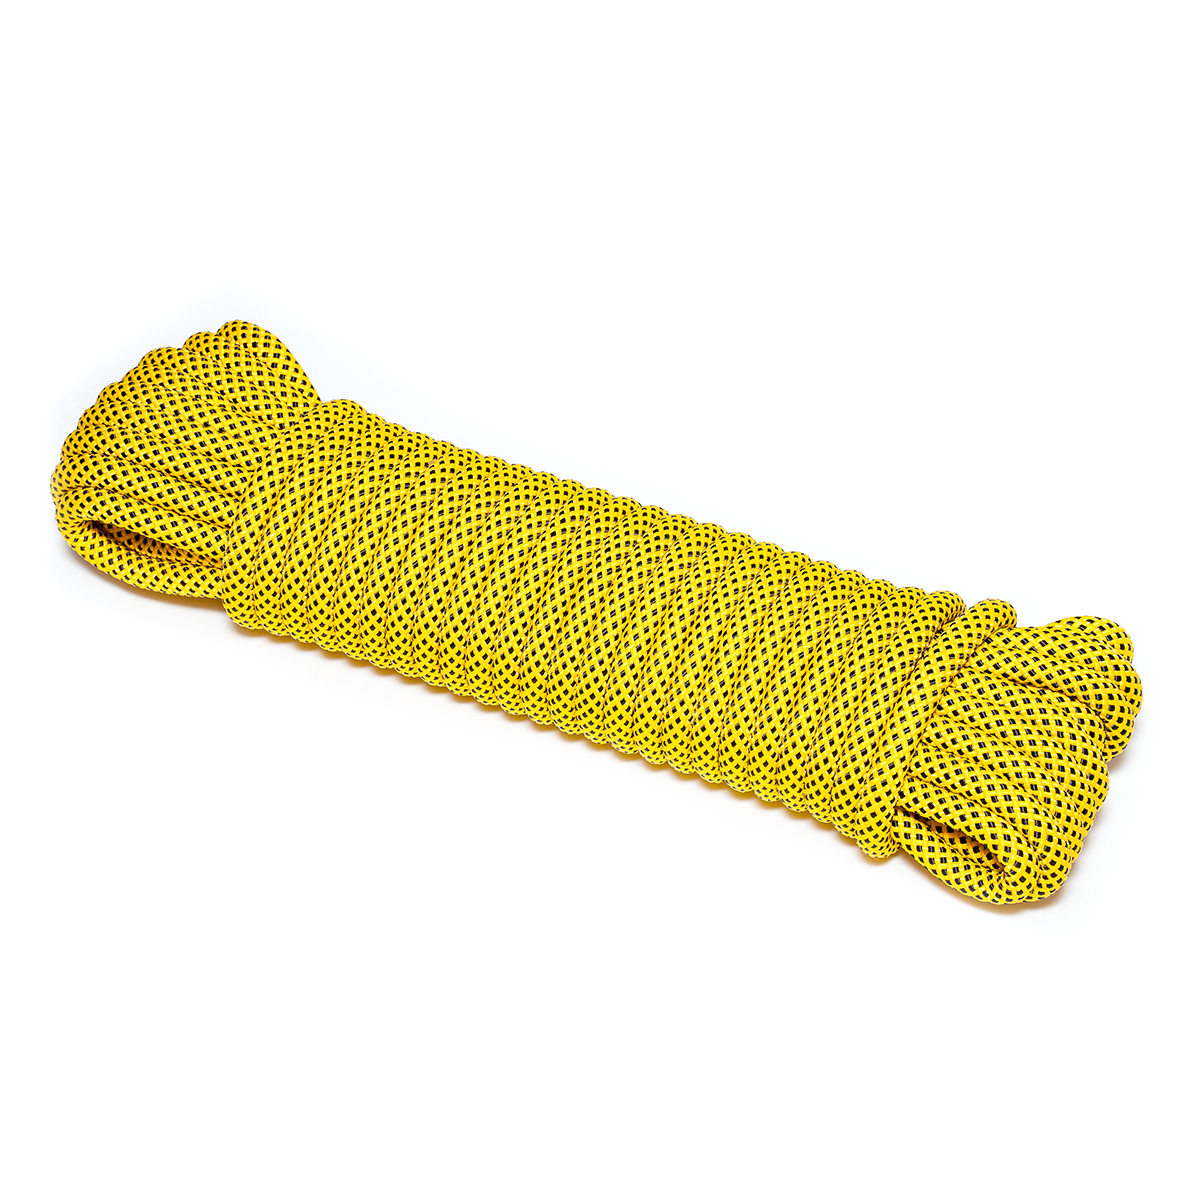 Шнур плетеный ЭКСТРИМ 12.0 мм, черно-желтый, 1400 кг, 20 м шнур для вязания 100% полиэфир 1мм 200м 75±10гр 09 кофе